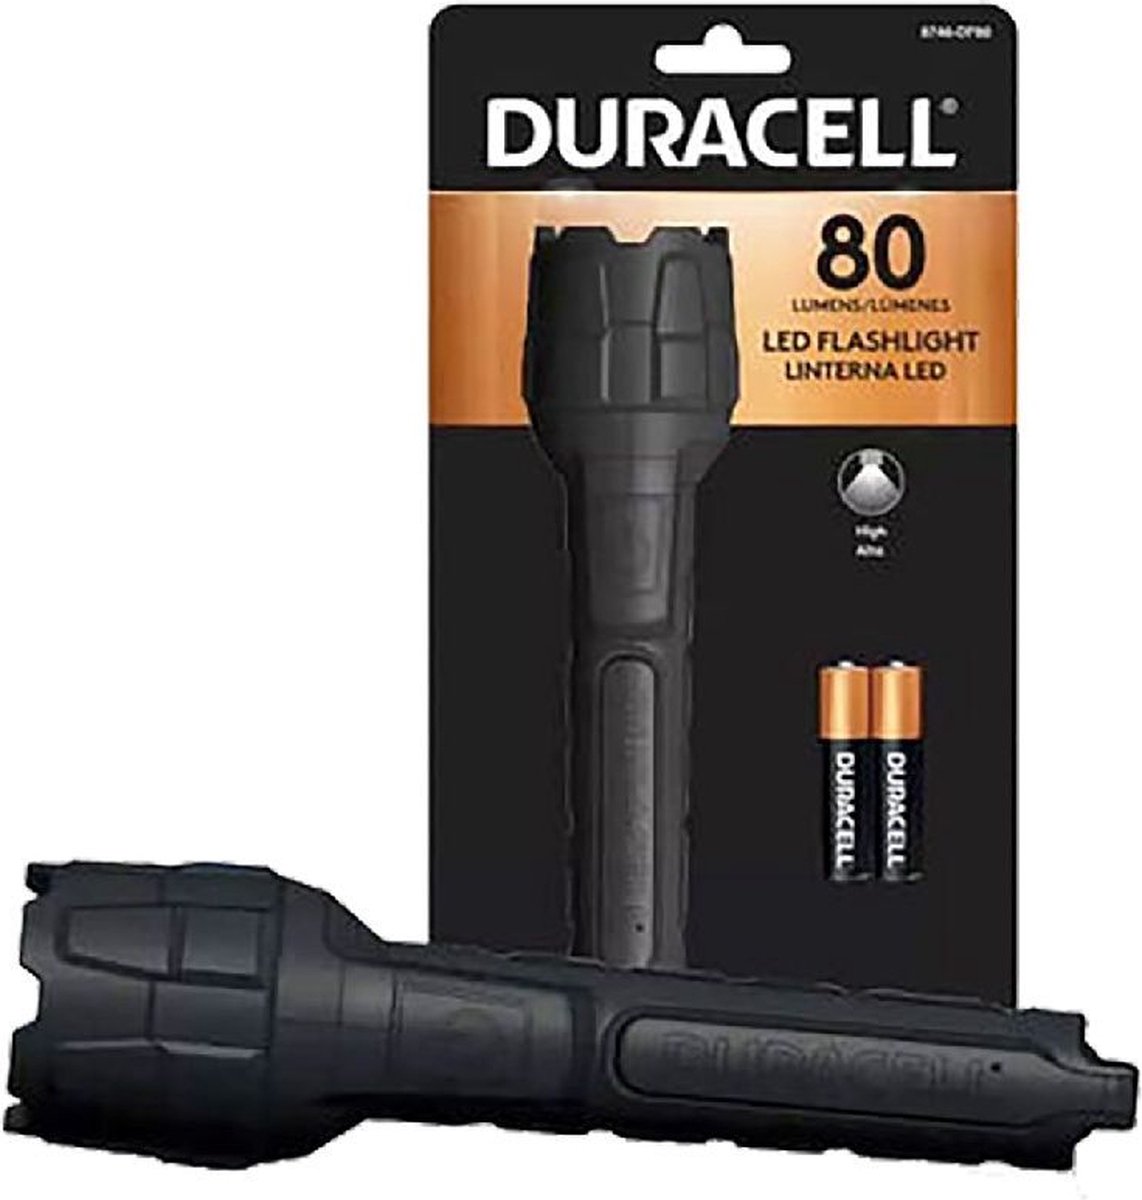 Duracell Zaklamp 80 Lumen + 2Xaaa Batterijen Zwart